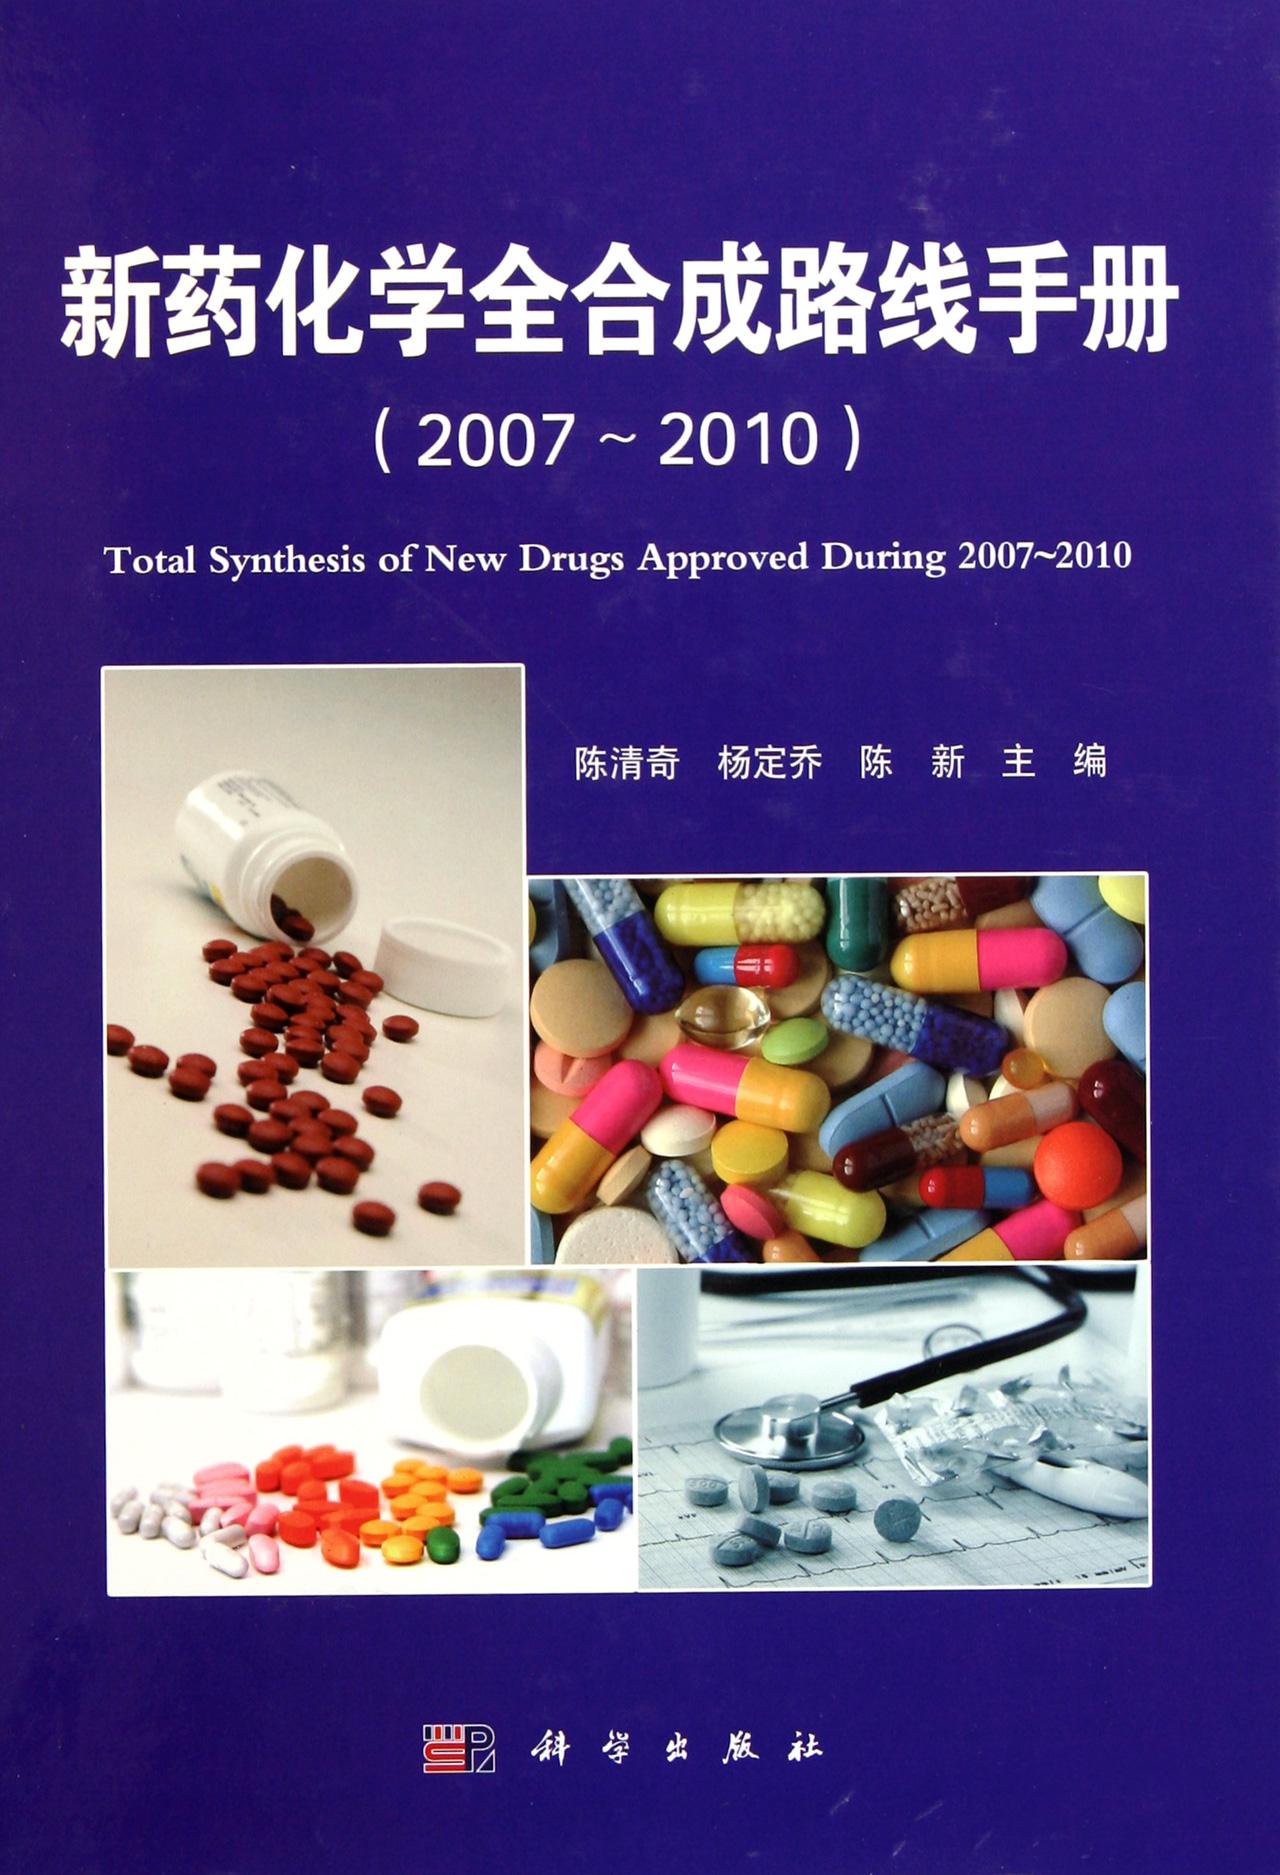 《新藥化學全合成路線手冊2007-2010》